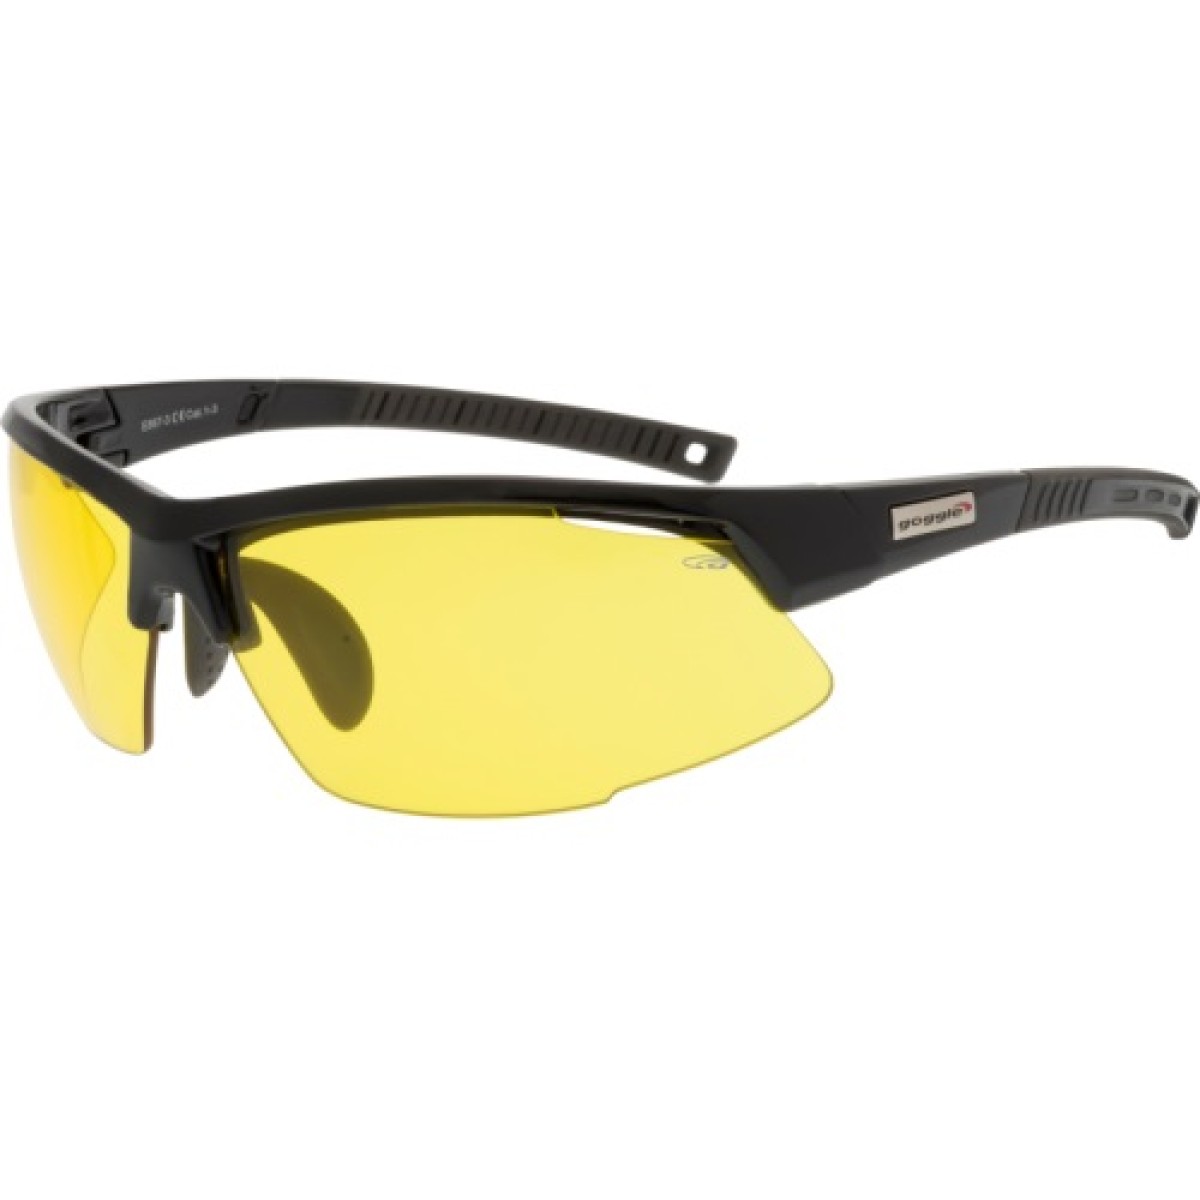 Sunglasses E867-3 GOGGLE - view 1